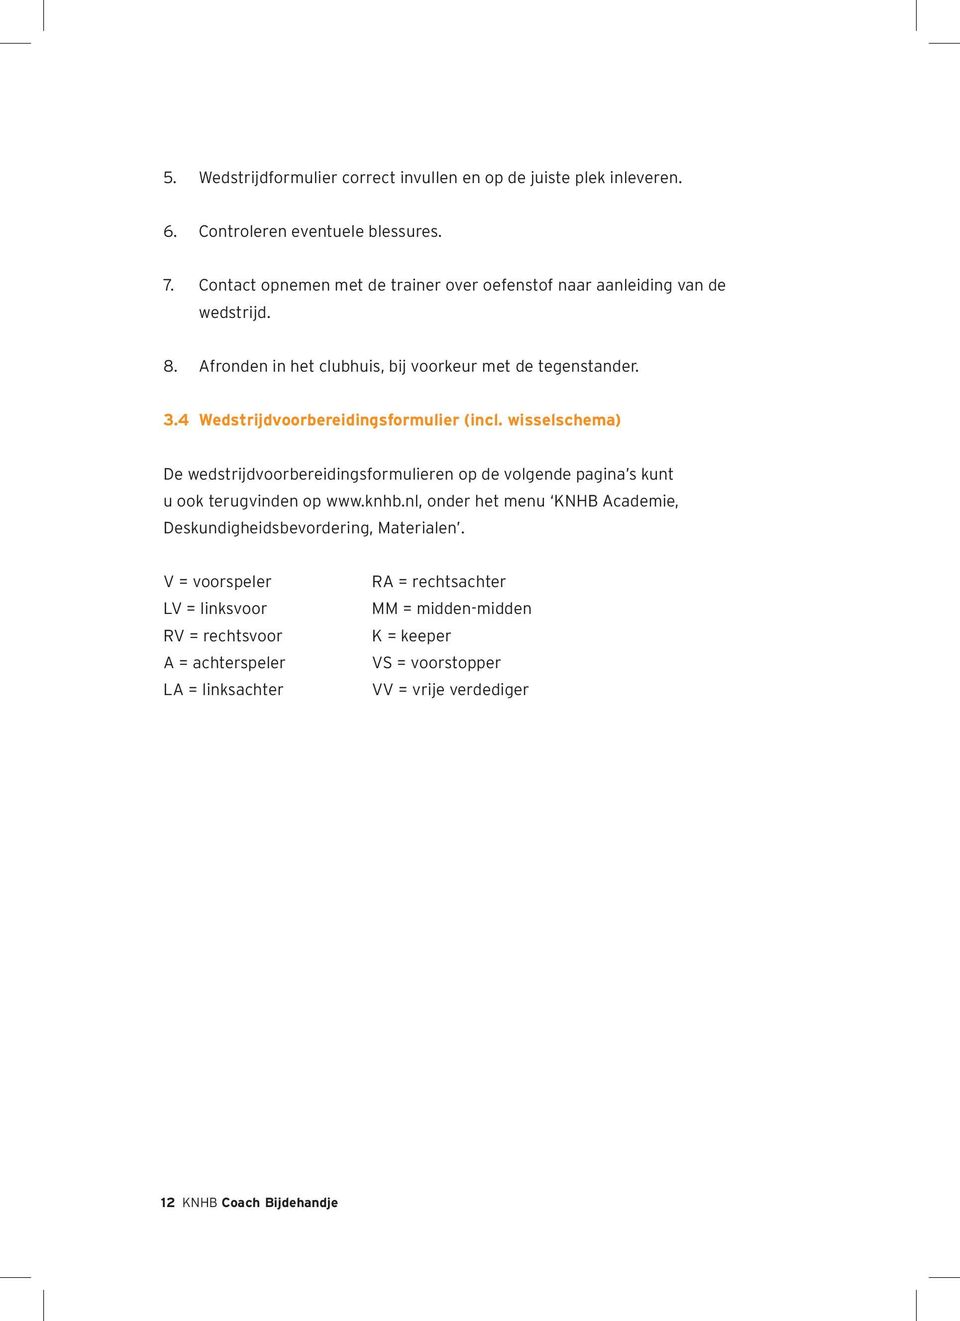 4 Wedstrijdvoorbereidingsformulier (incl. wisselschema) De wedstrijdvoorbereidingsformulieren op de volgende pagina s kunt u ook terugvinden op www.knhb.